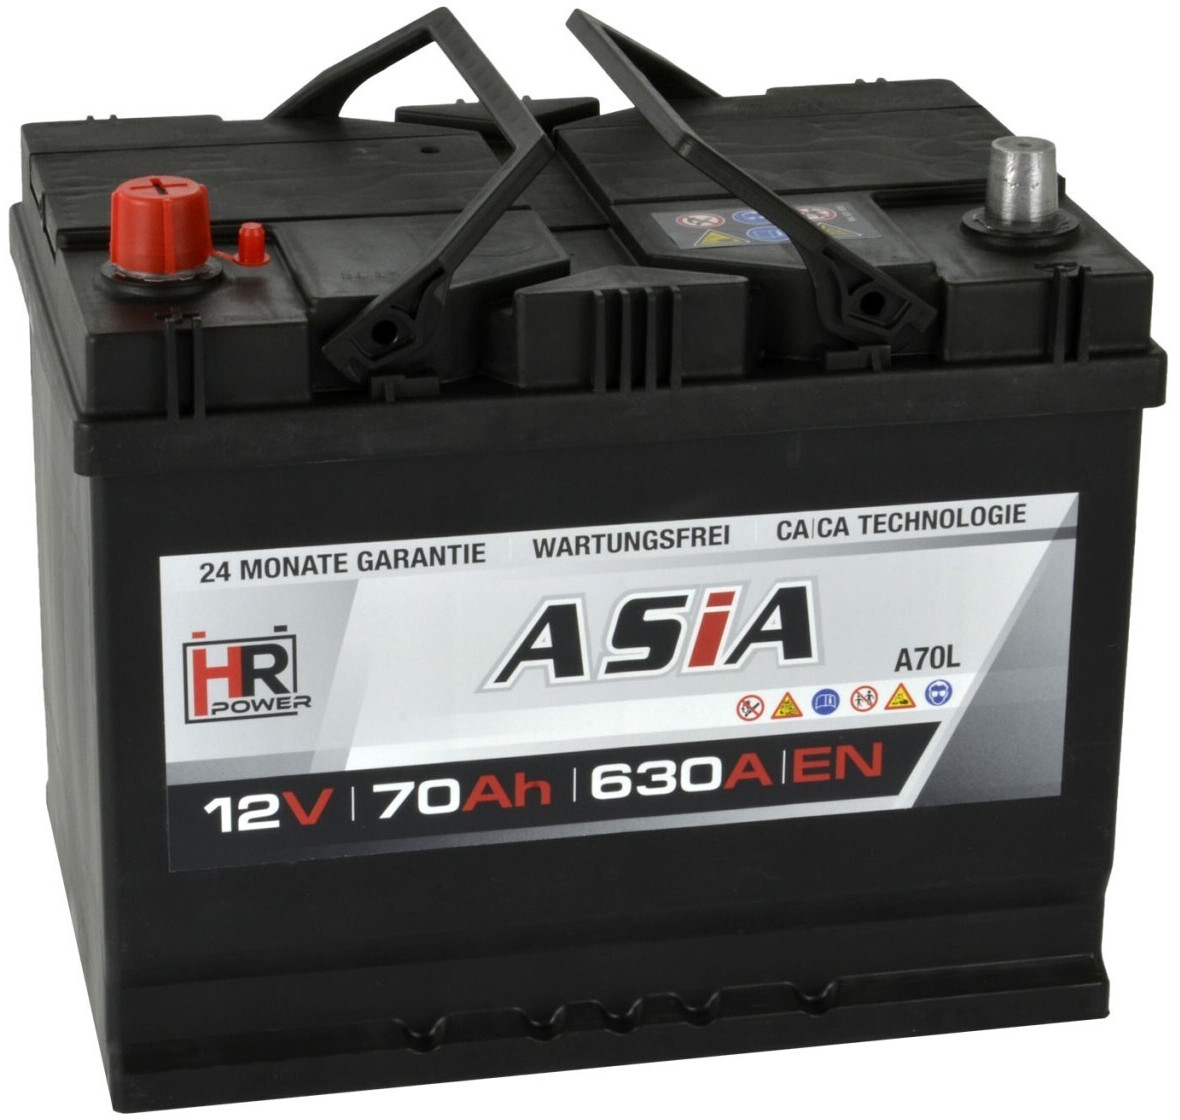 HR HiPower ASIA A70L 12V 70Ah 630A ab 61,90 €